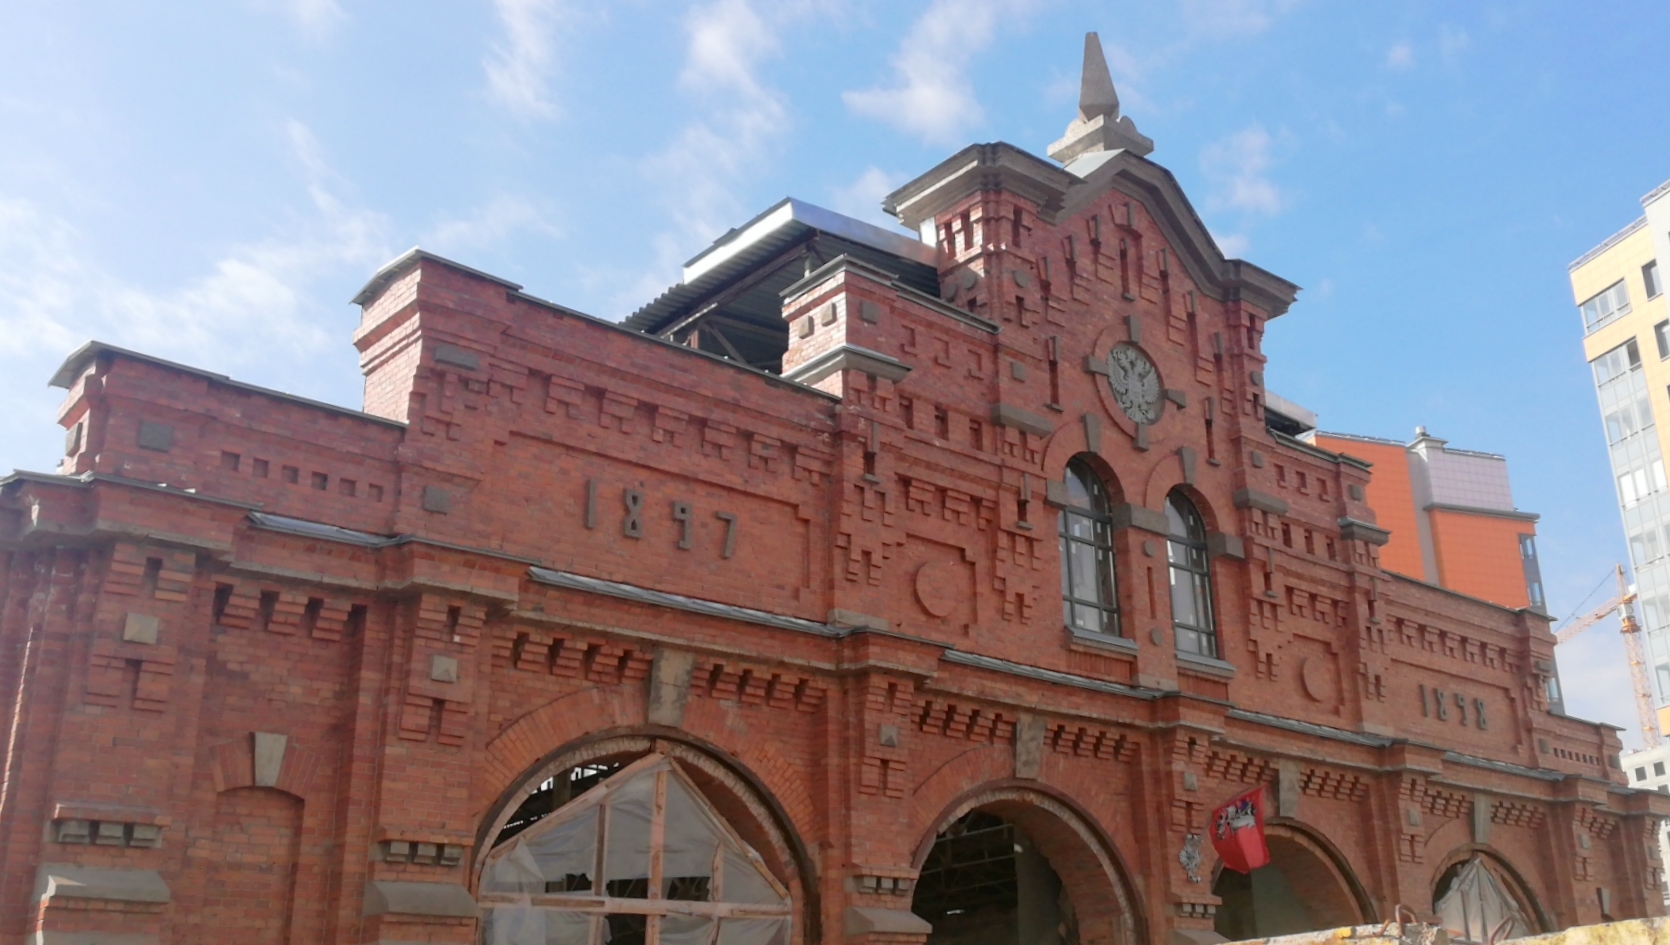 варшавский вокзал в санкт петербурге старые